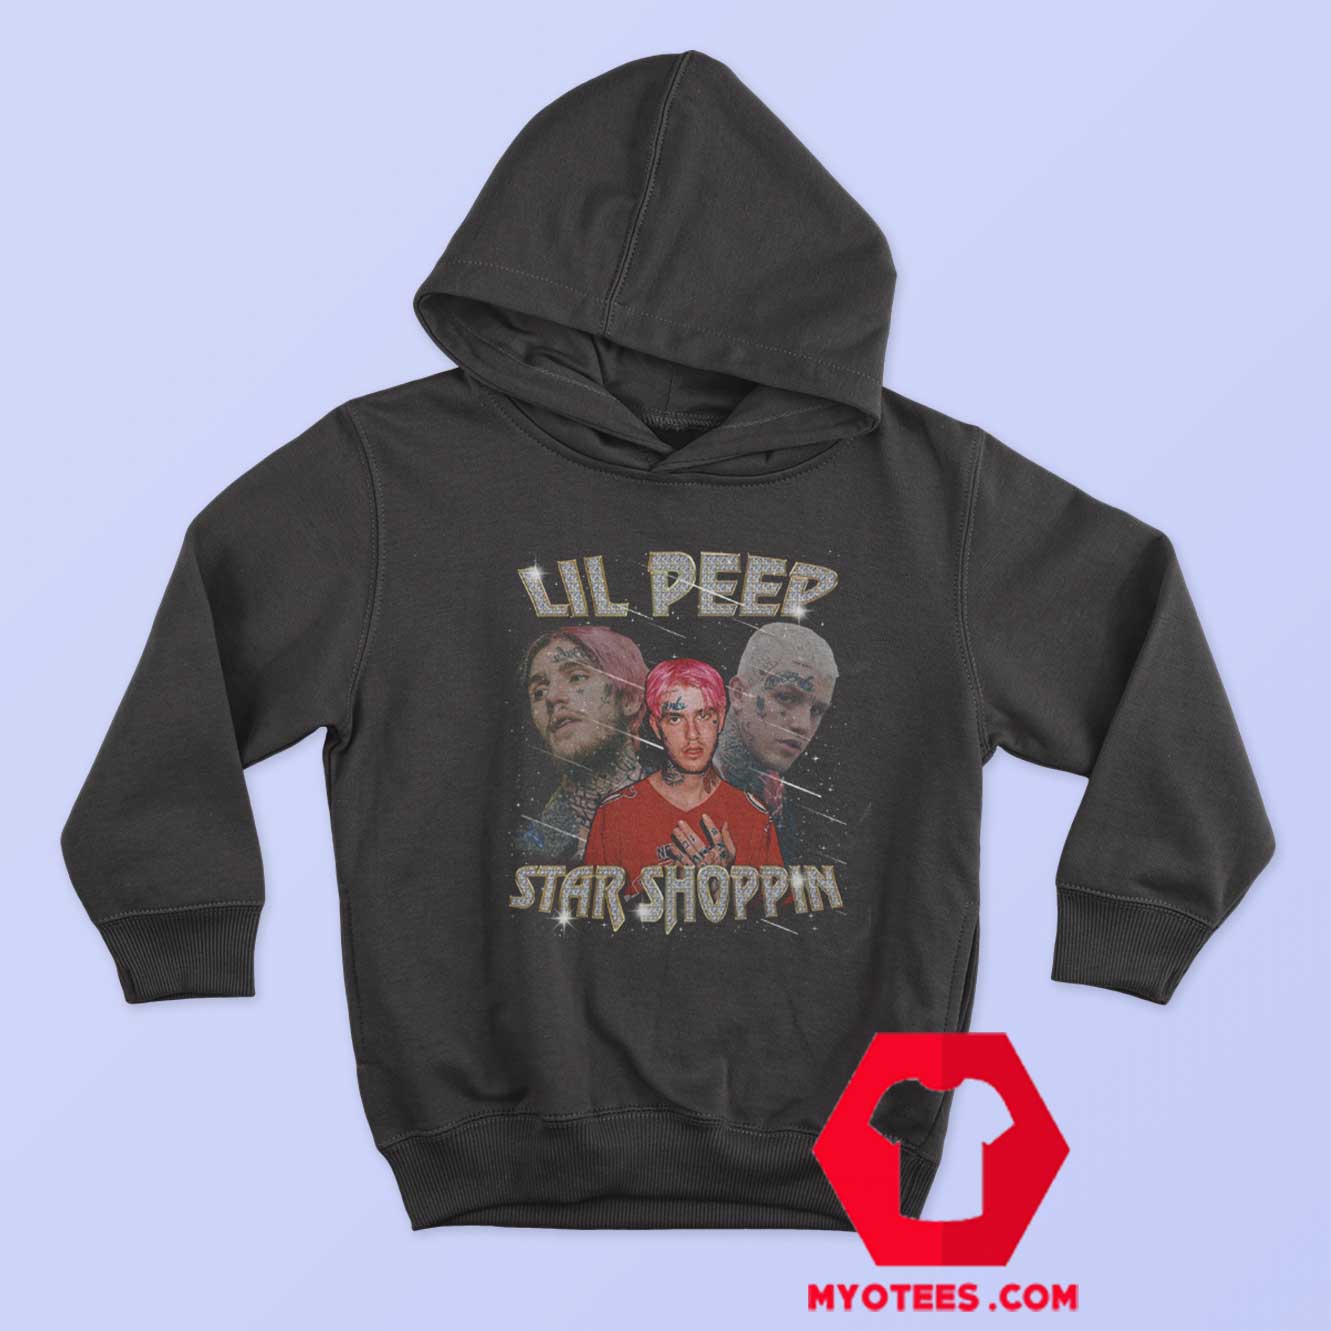 Lil Peep Star Shoppin Vintage 90s Bootleg Hoodie